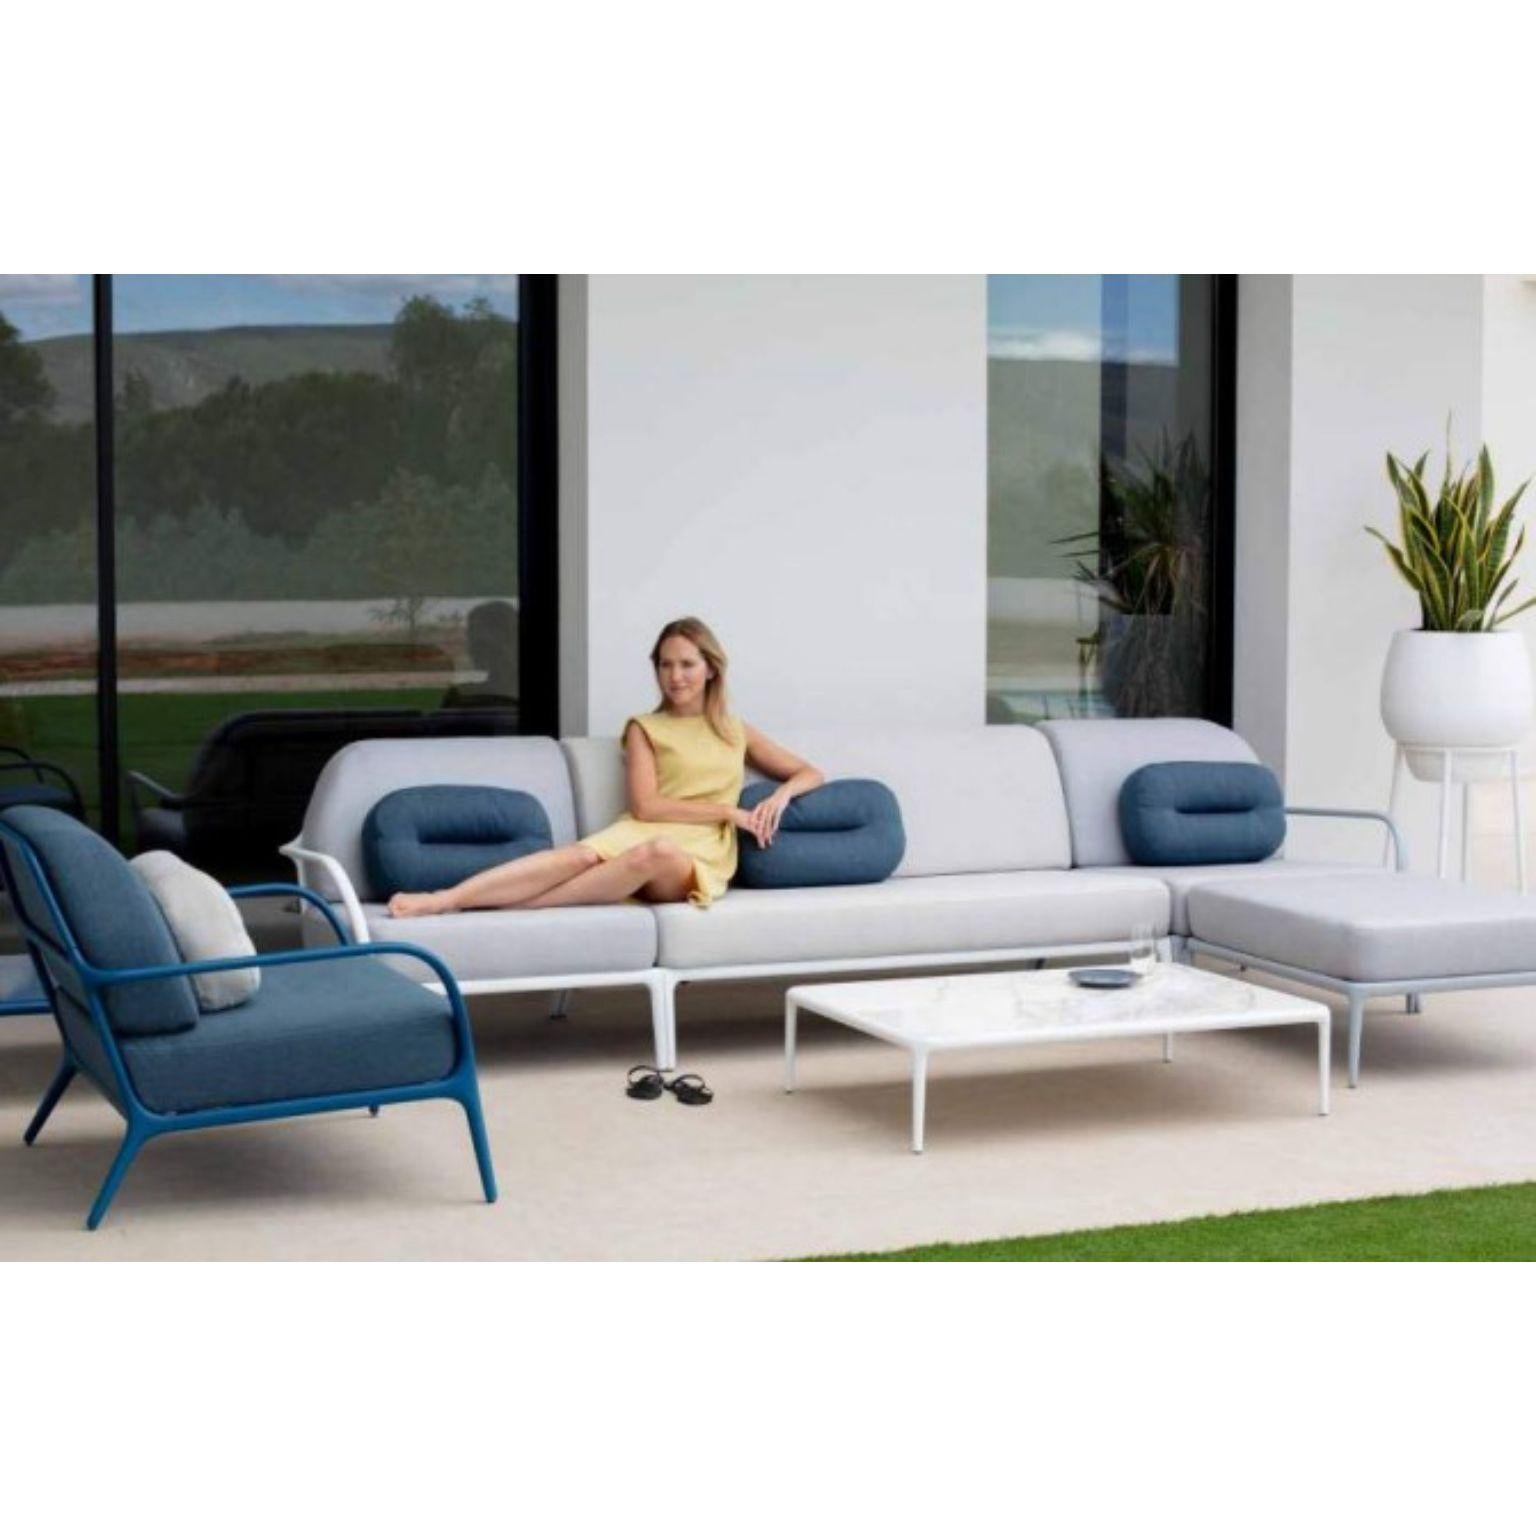 Post-Modern Xaloc Left 90 Grey Modular Sofa by MOWEE